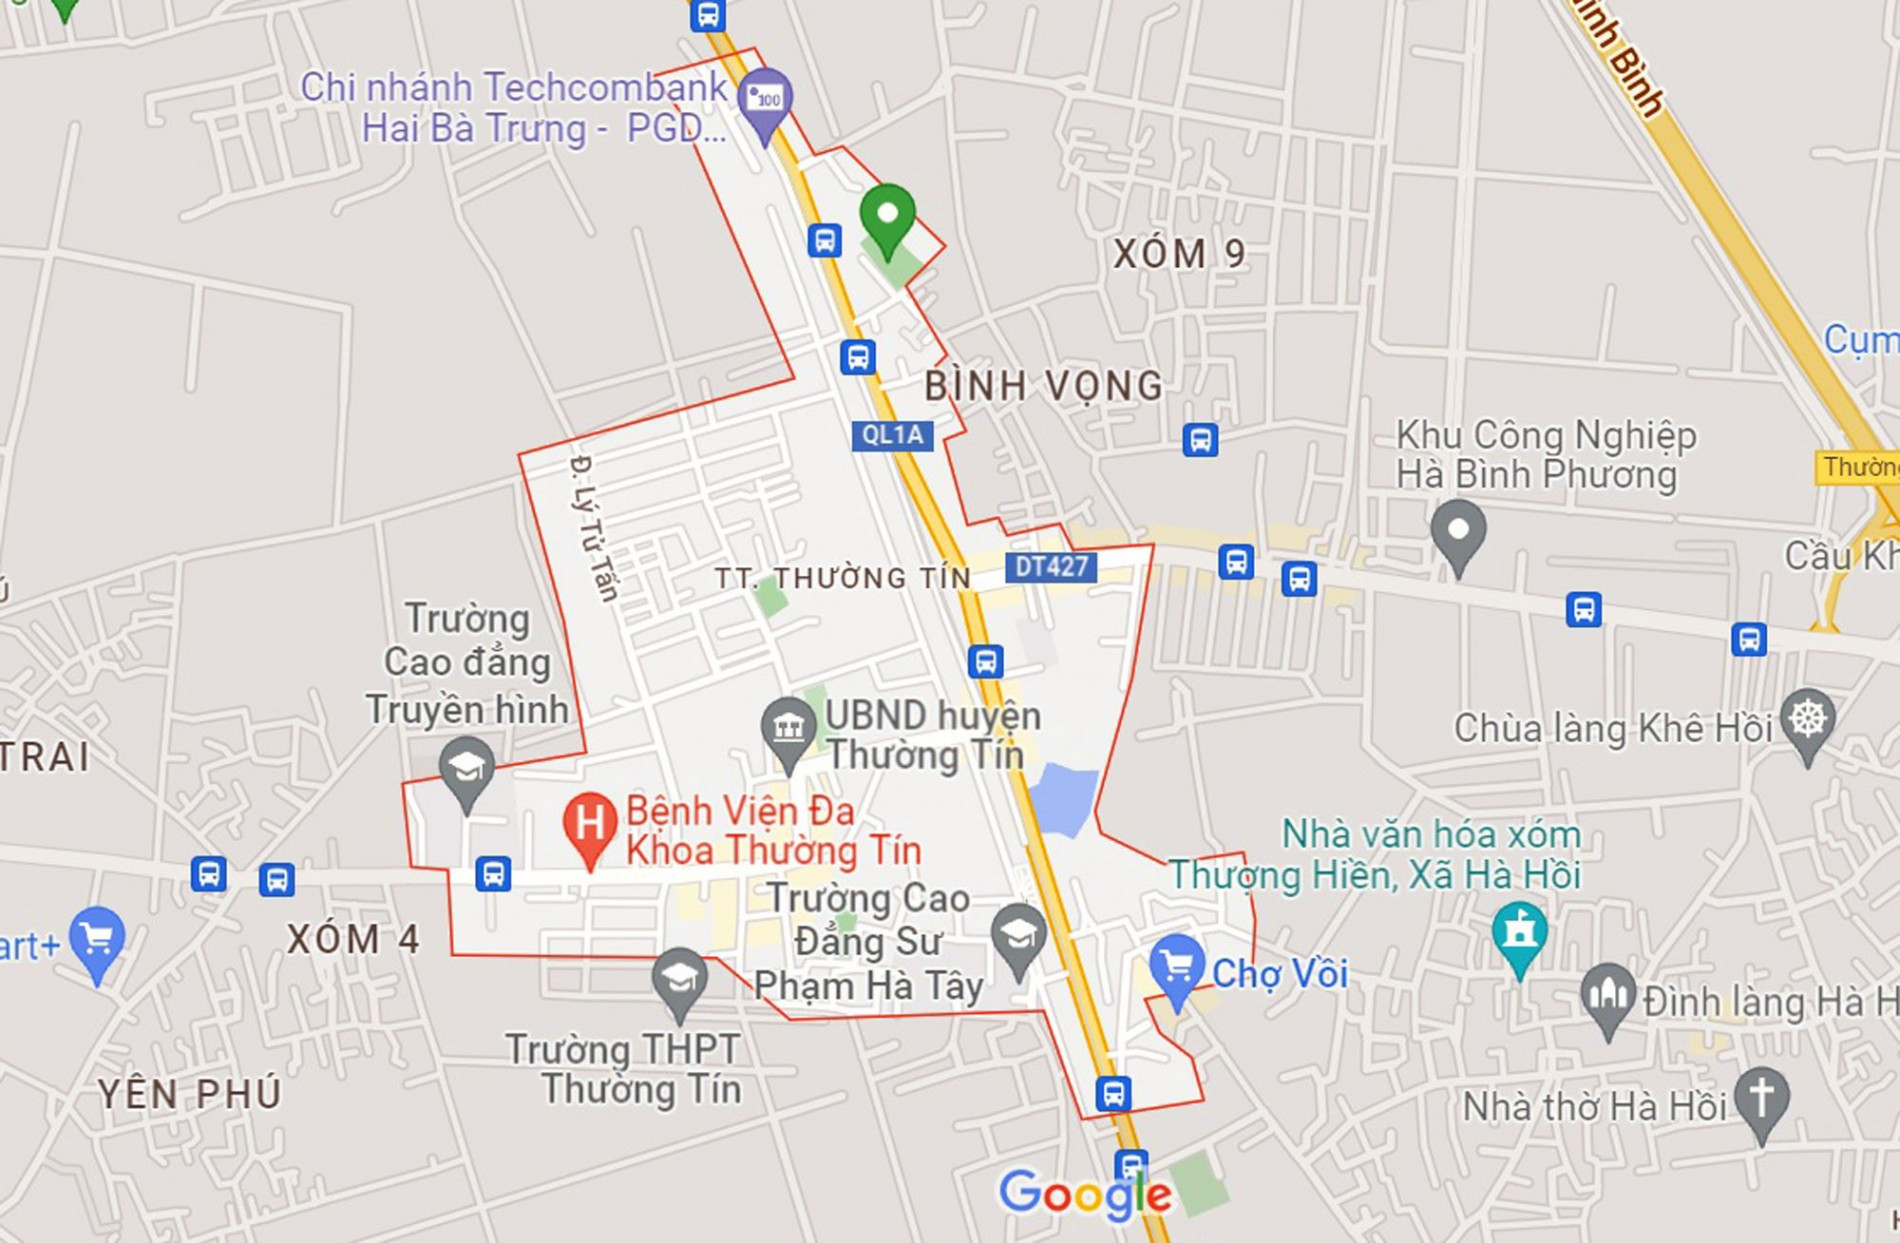 Đường sẽ mở theo quy hoạch ở thị trấn Thường Tín, Thường Tín, Hà Nội (phần 1)